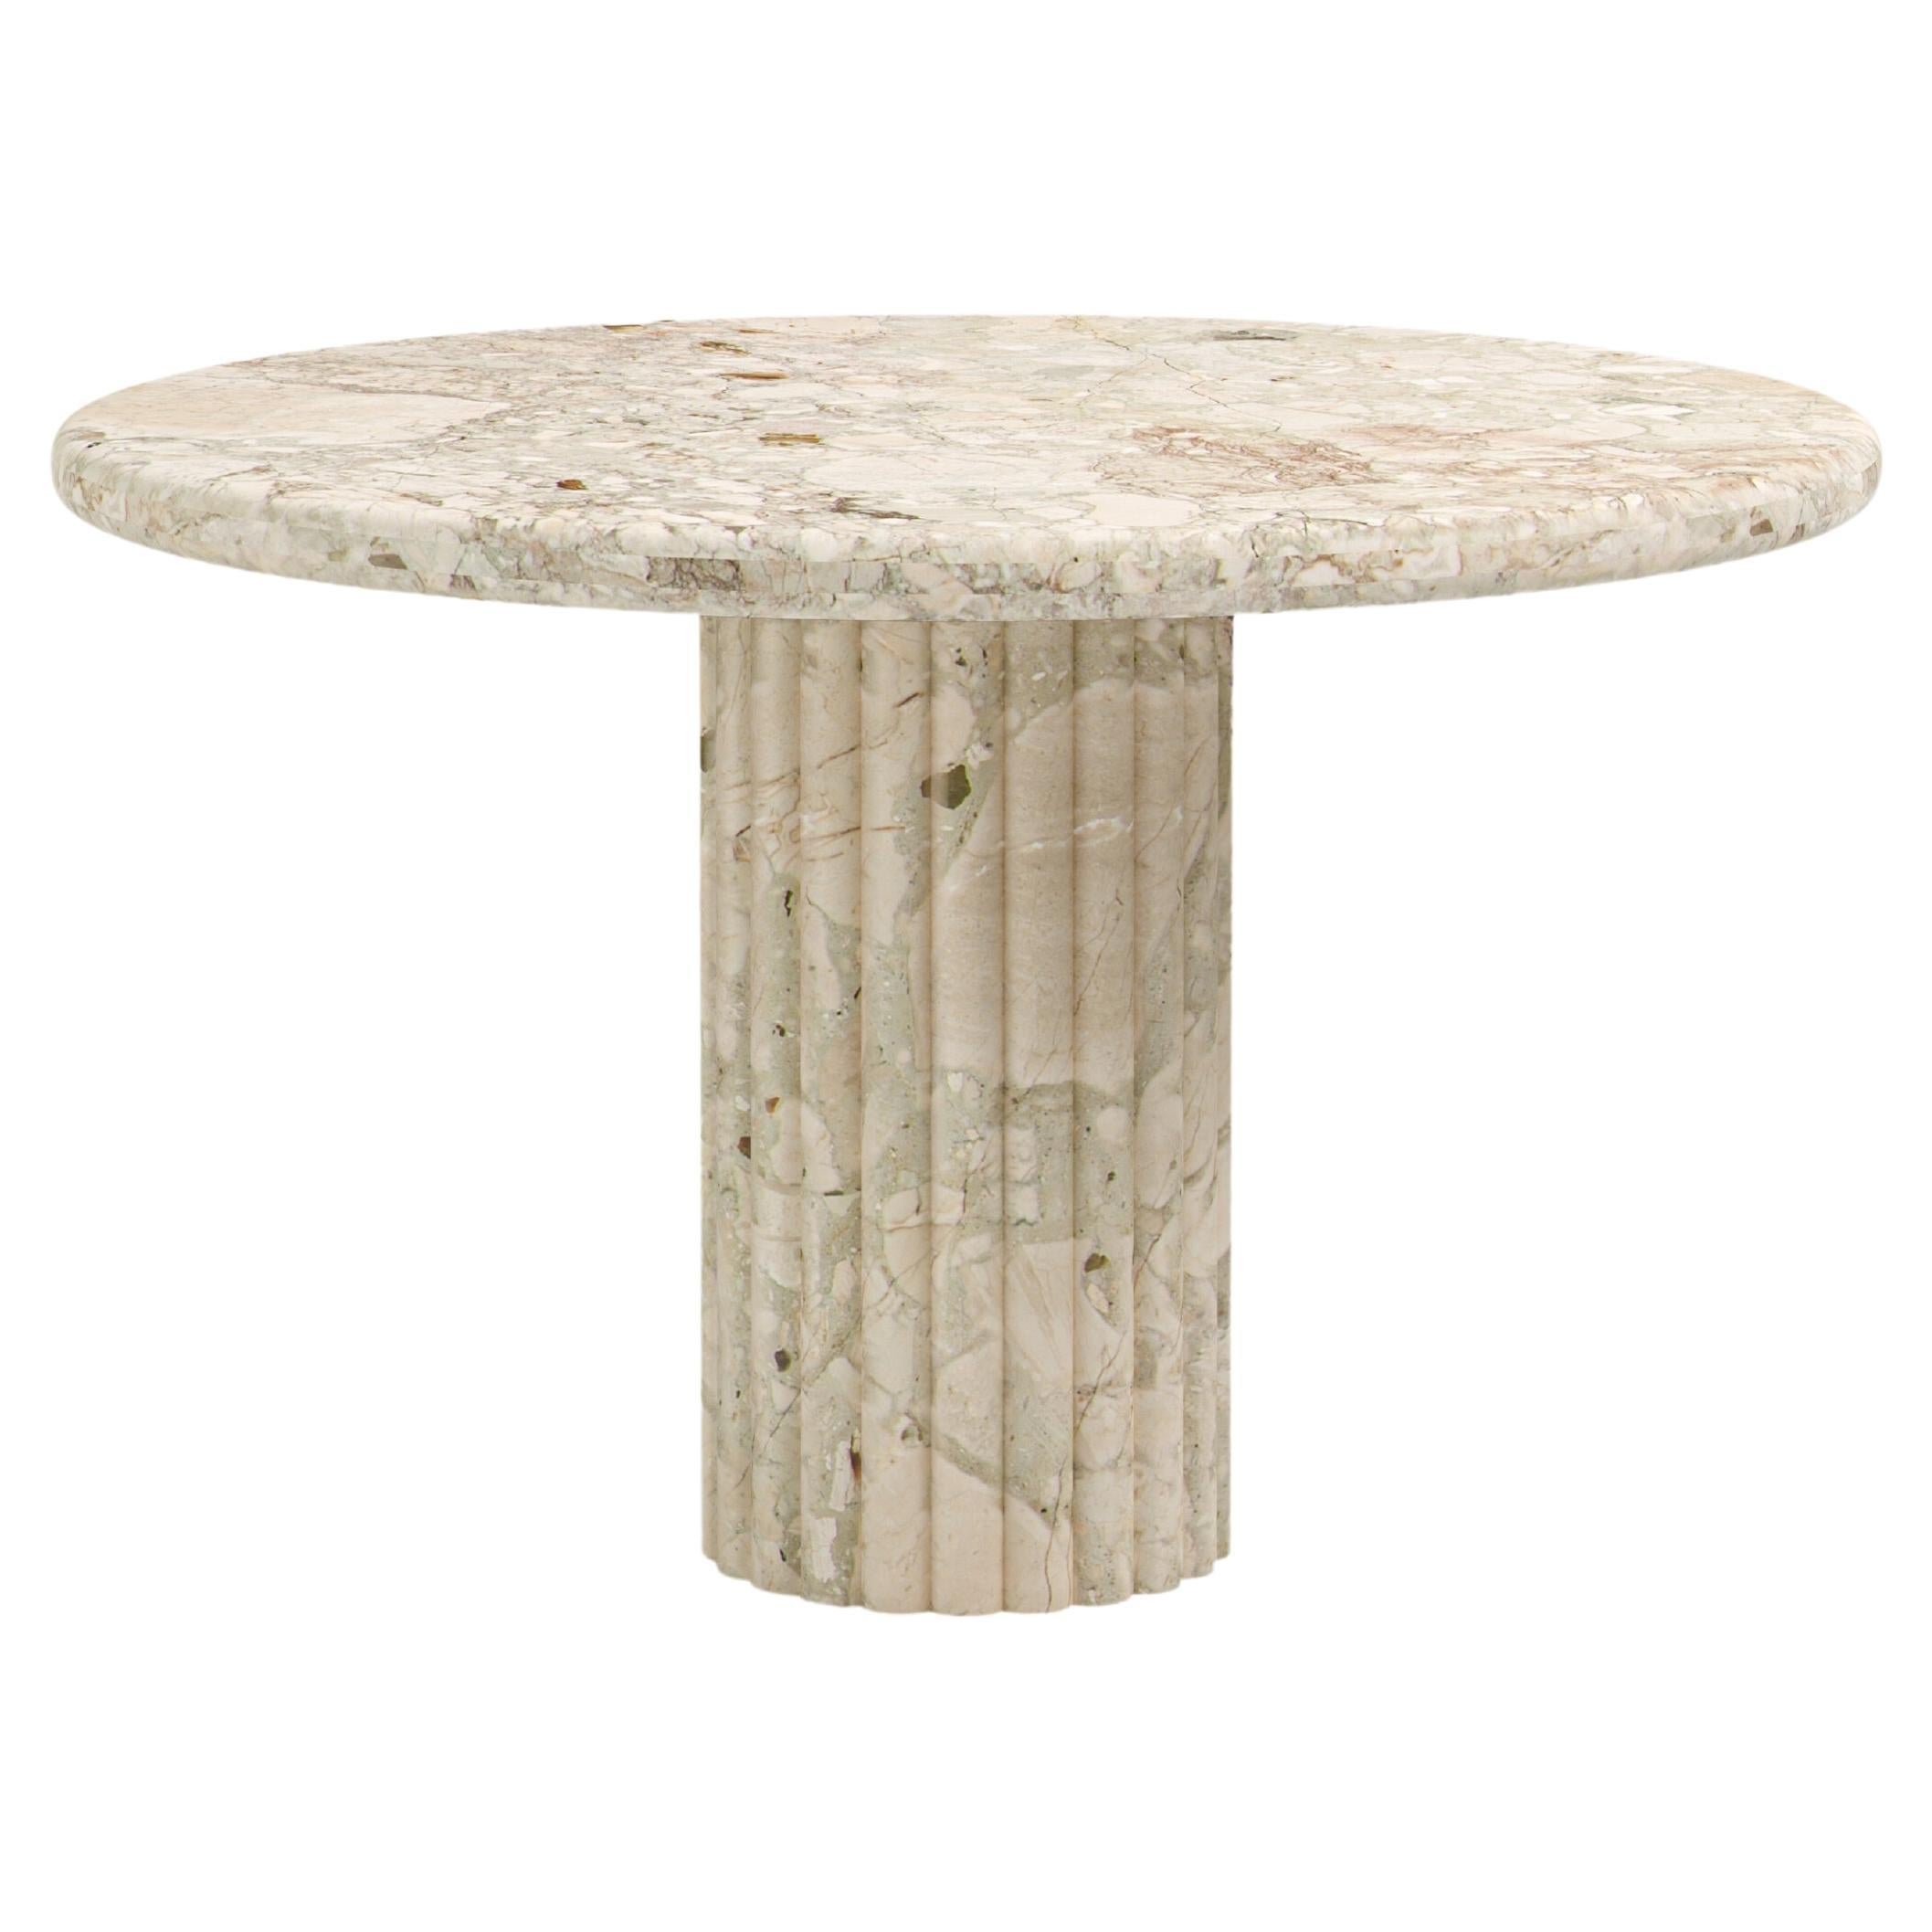 FORM(LA) Fluta Round Dining Table 36”L x 36”W x 30”H Breccia Rosa Marble For Sale